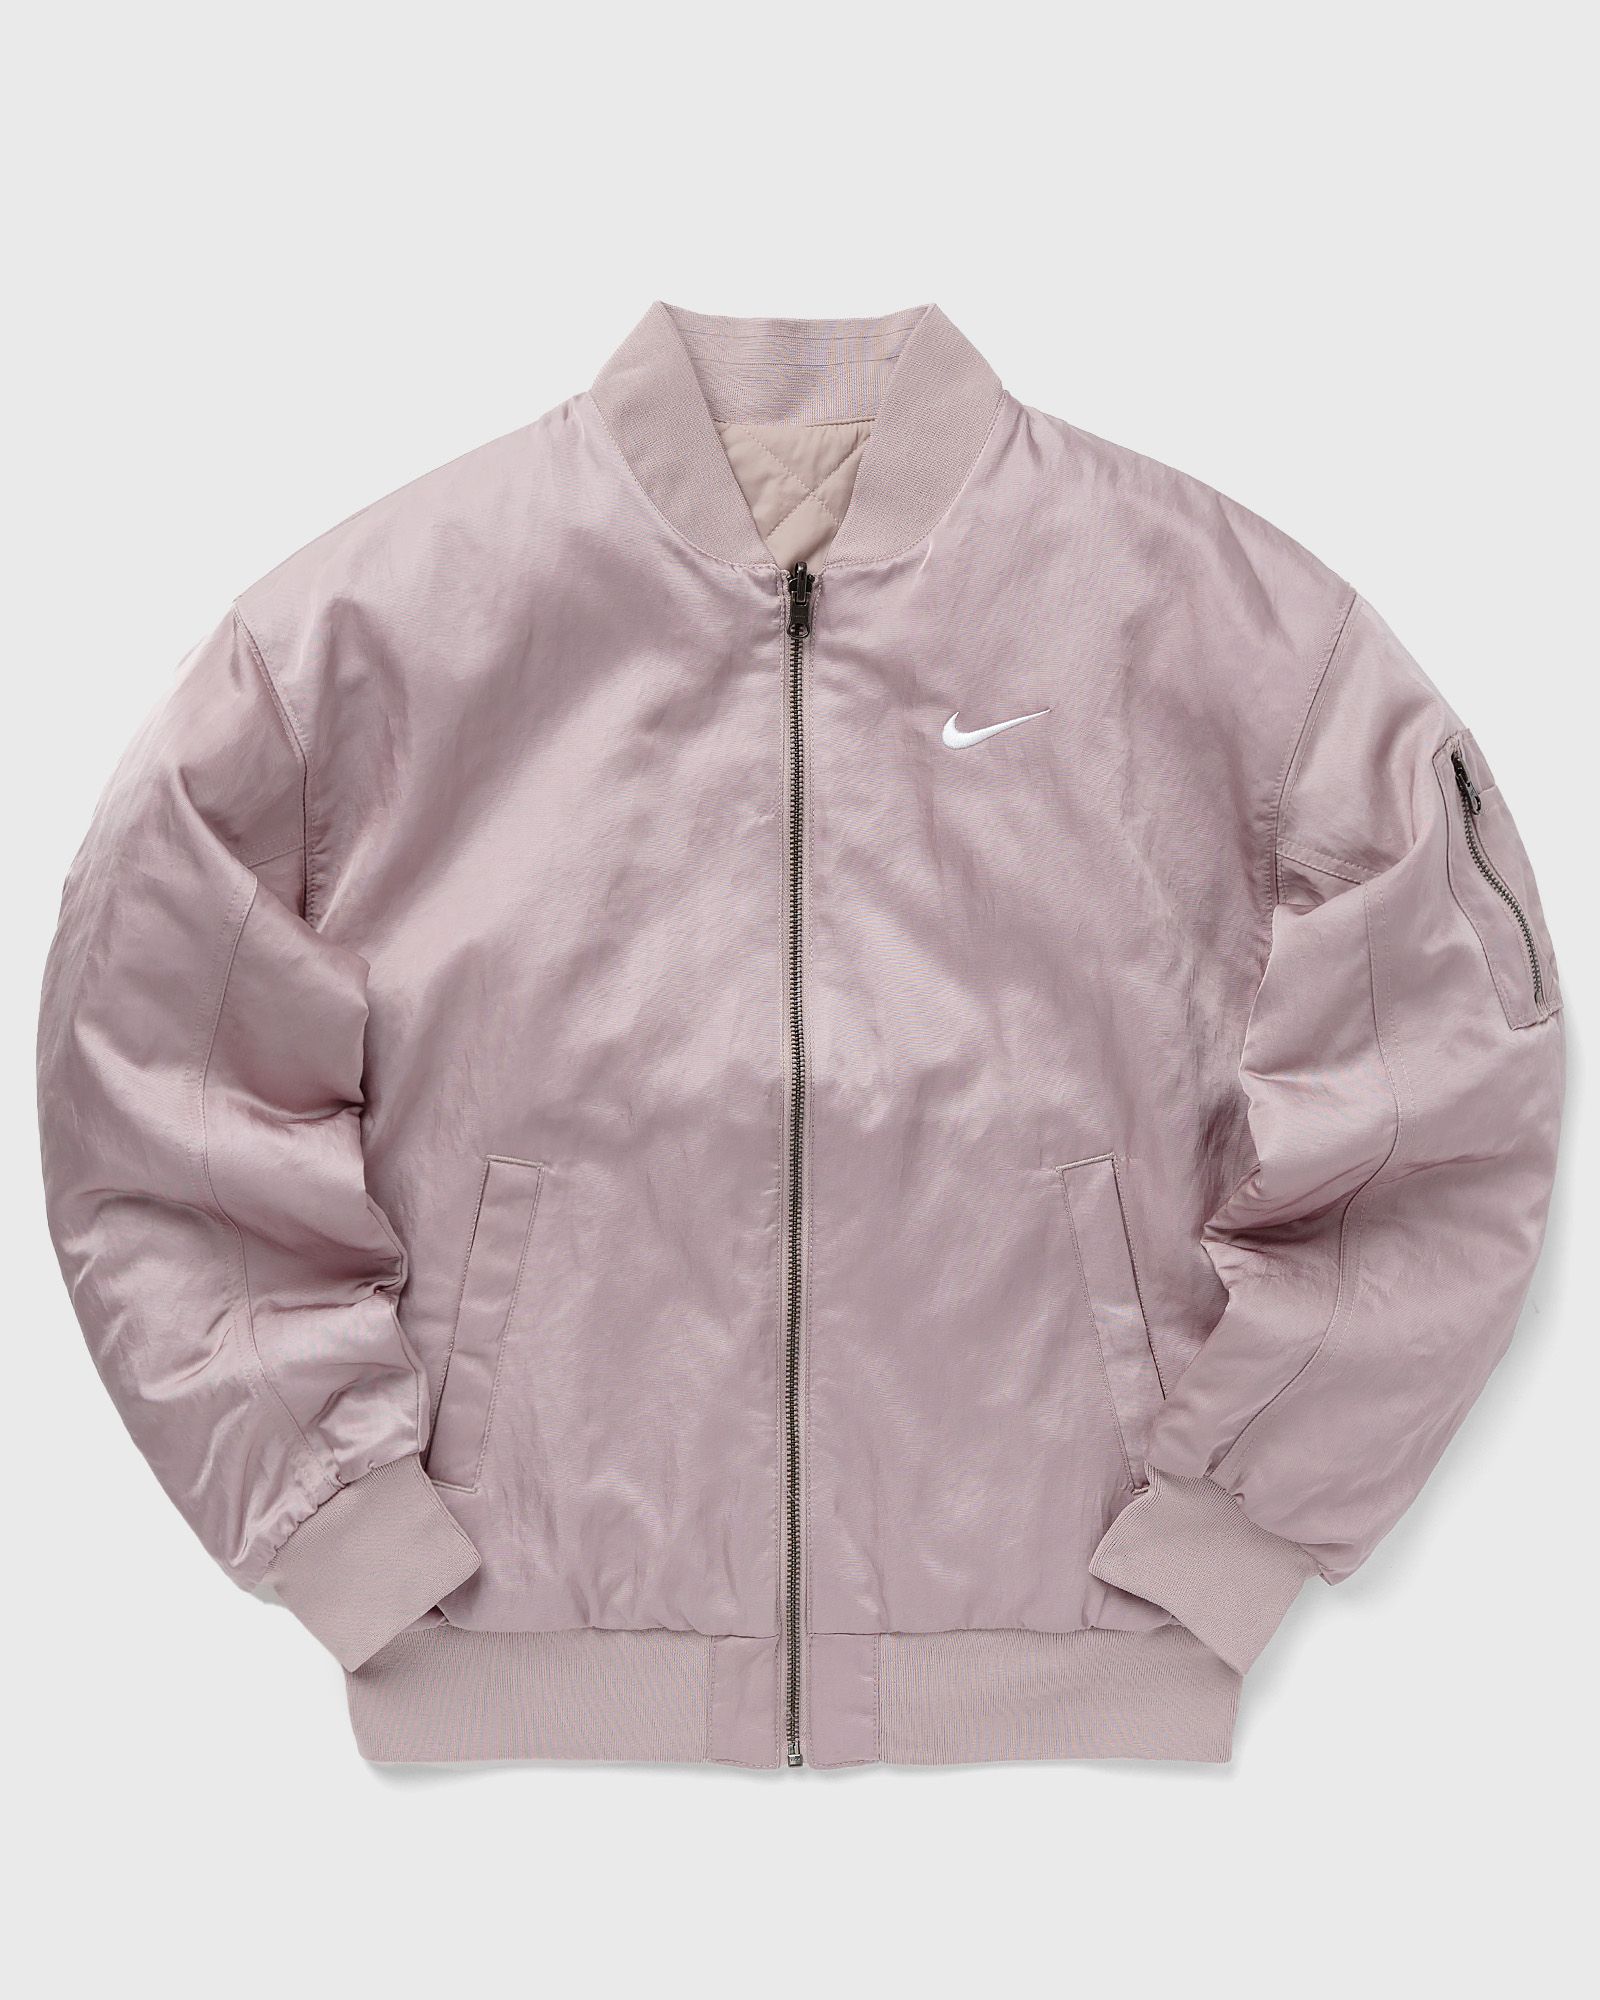 Nike - wmns reversible varsity bomber jacket women bomber jackets purple in größe:s